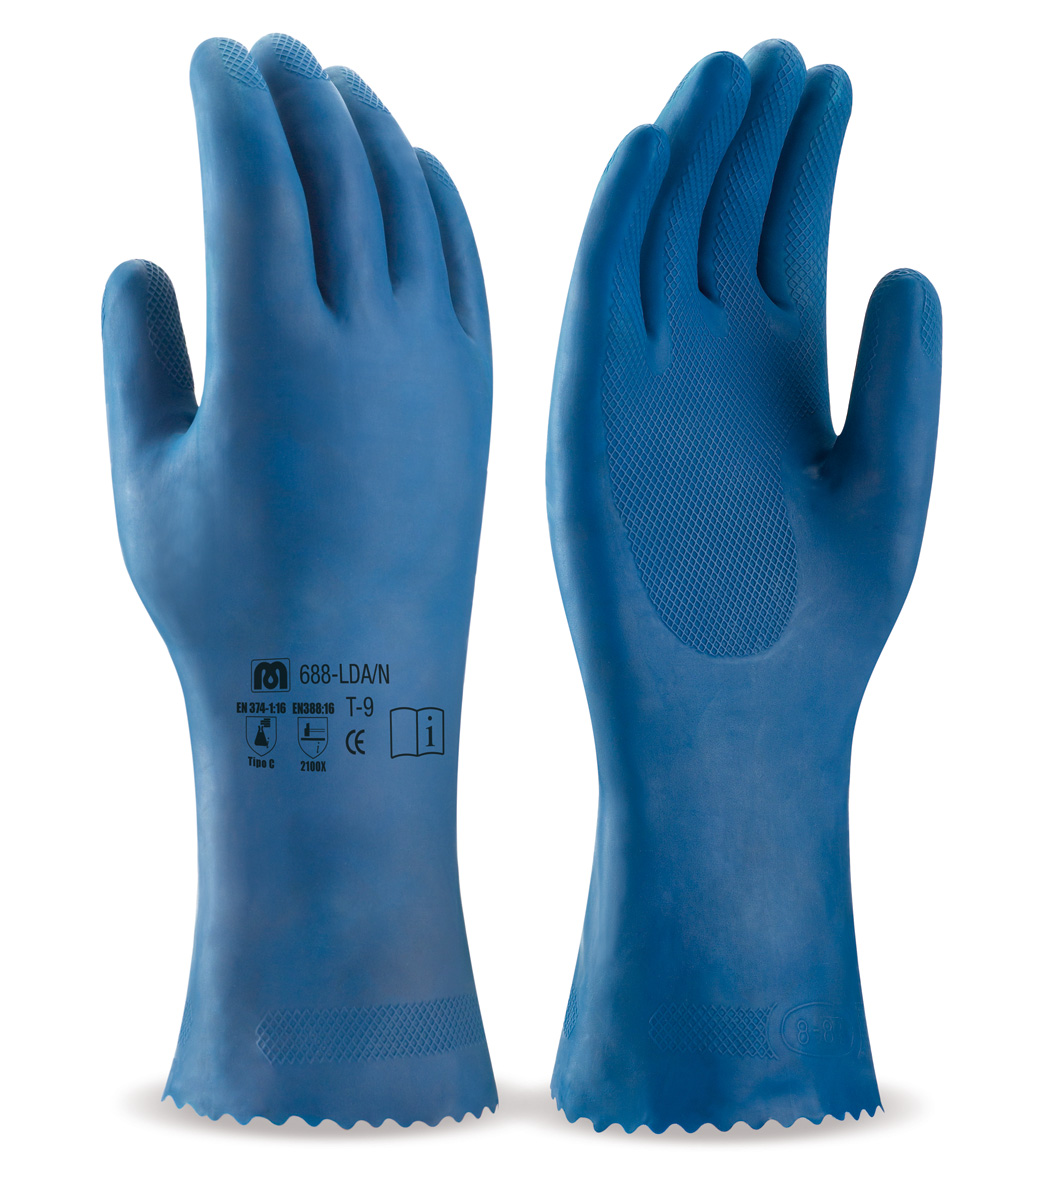 Guante de PVC estanco de 27 cm. en color azul de doble capa rugosa. Precio desde 2,55 €